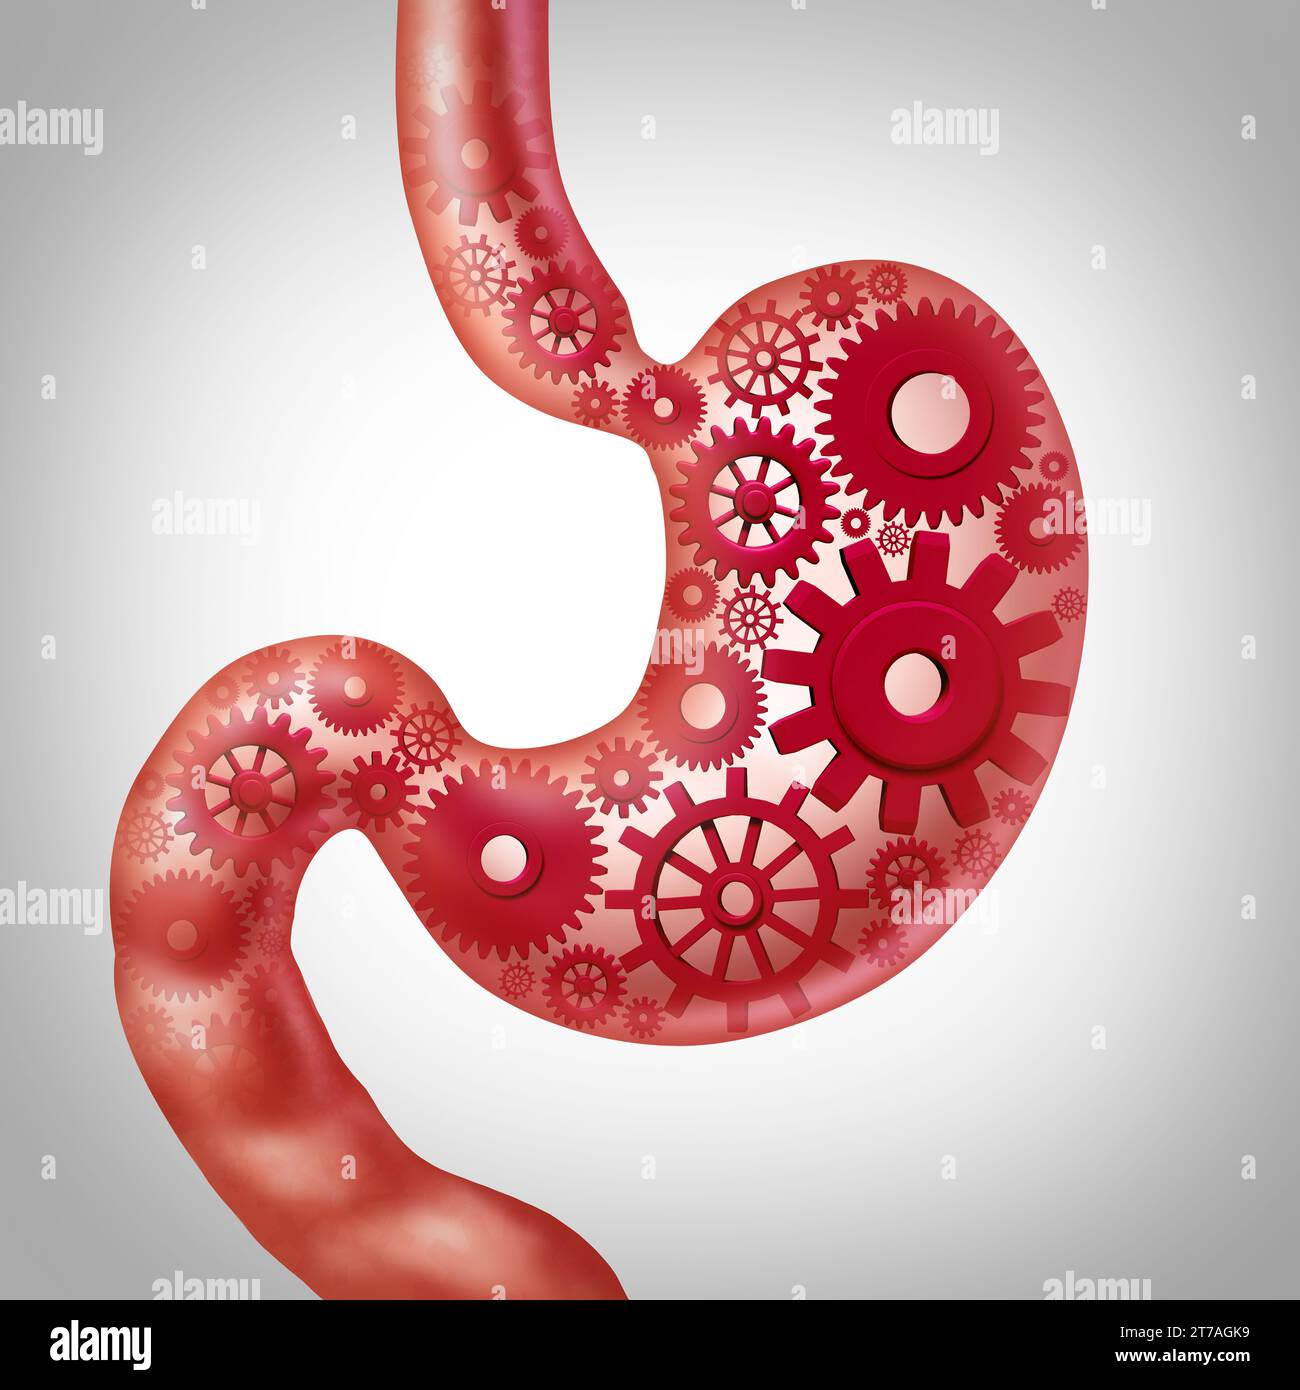 Metabolismo umano e digestione alimentare funzione o digestione nutrizione come uno stomaco che rappresenta la salute gastrointestinale o processo digestivo. Foto Stock